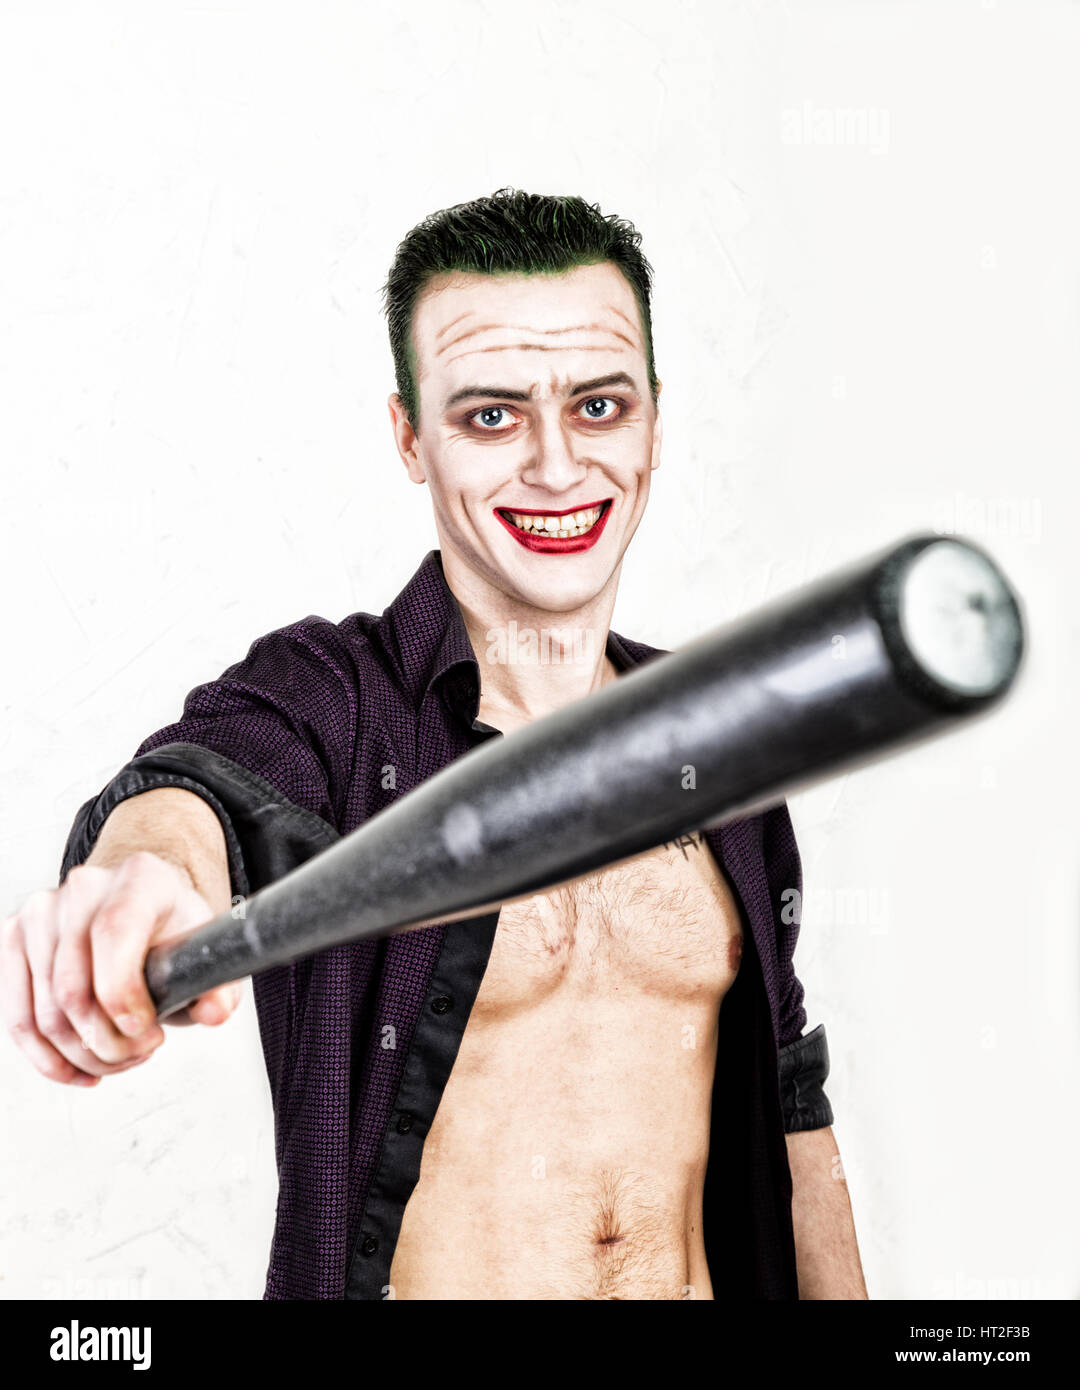 Kerl mit verrückten Joker Gesicht halten, Baseballschläger, grüne Haare und idiotische Smike. Karneval Kostüm. Stockfoto